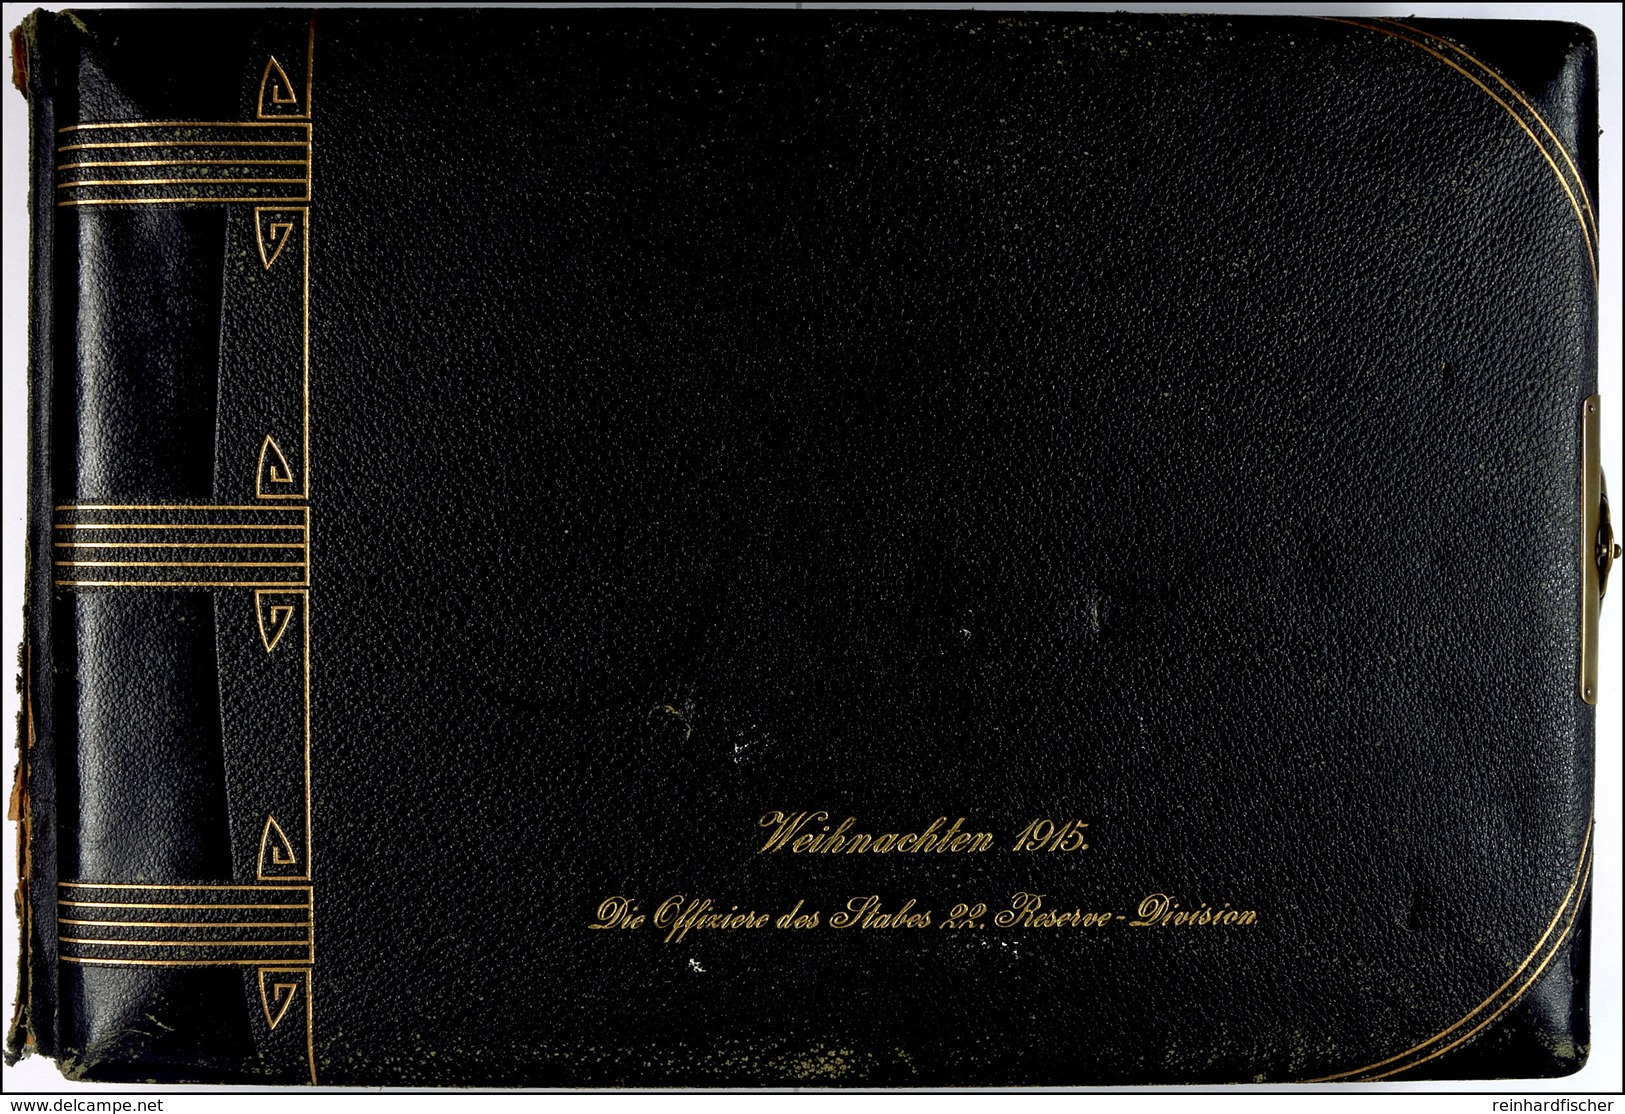 Fotoalbum Mit 79x Aufnahmen, Offiziere II. Weltkrieg, Album Schwarz Mit Goldschrift "Weihnachten 1915. Die Offiziere Des - Documents